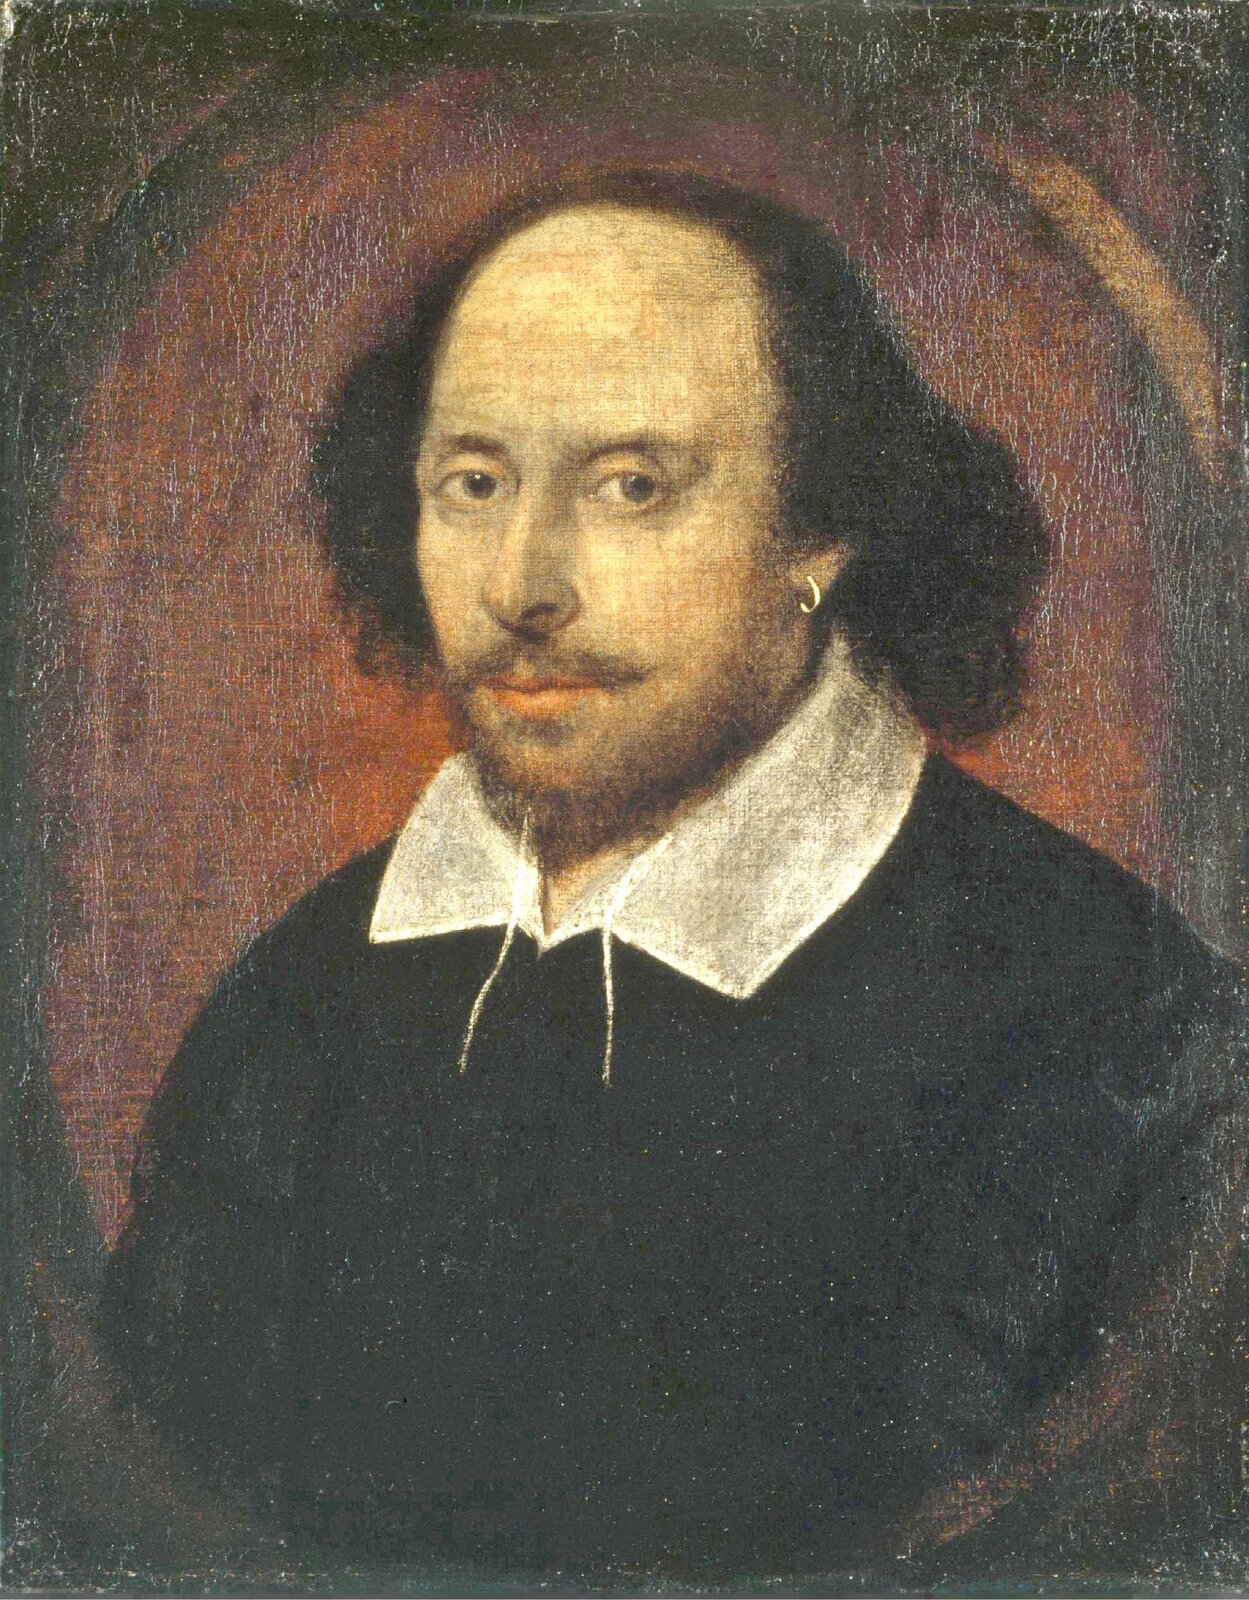 Szekspir Źródło: Szekspir, 1610, Olej na płótnie, National Portrait Gallery, domena publiczna.